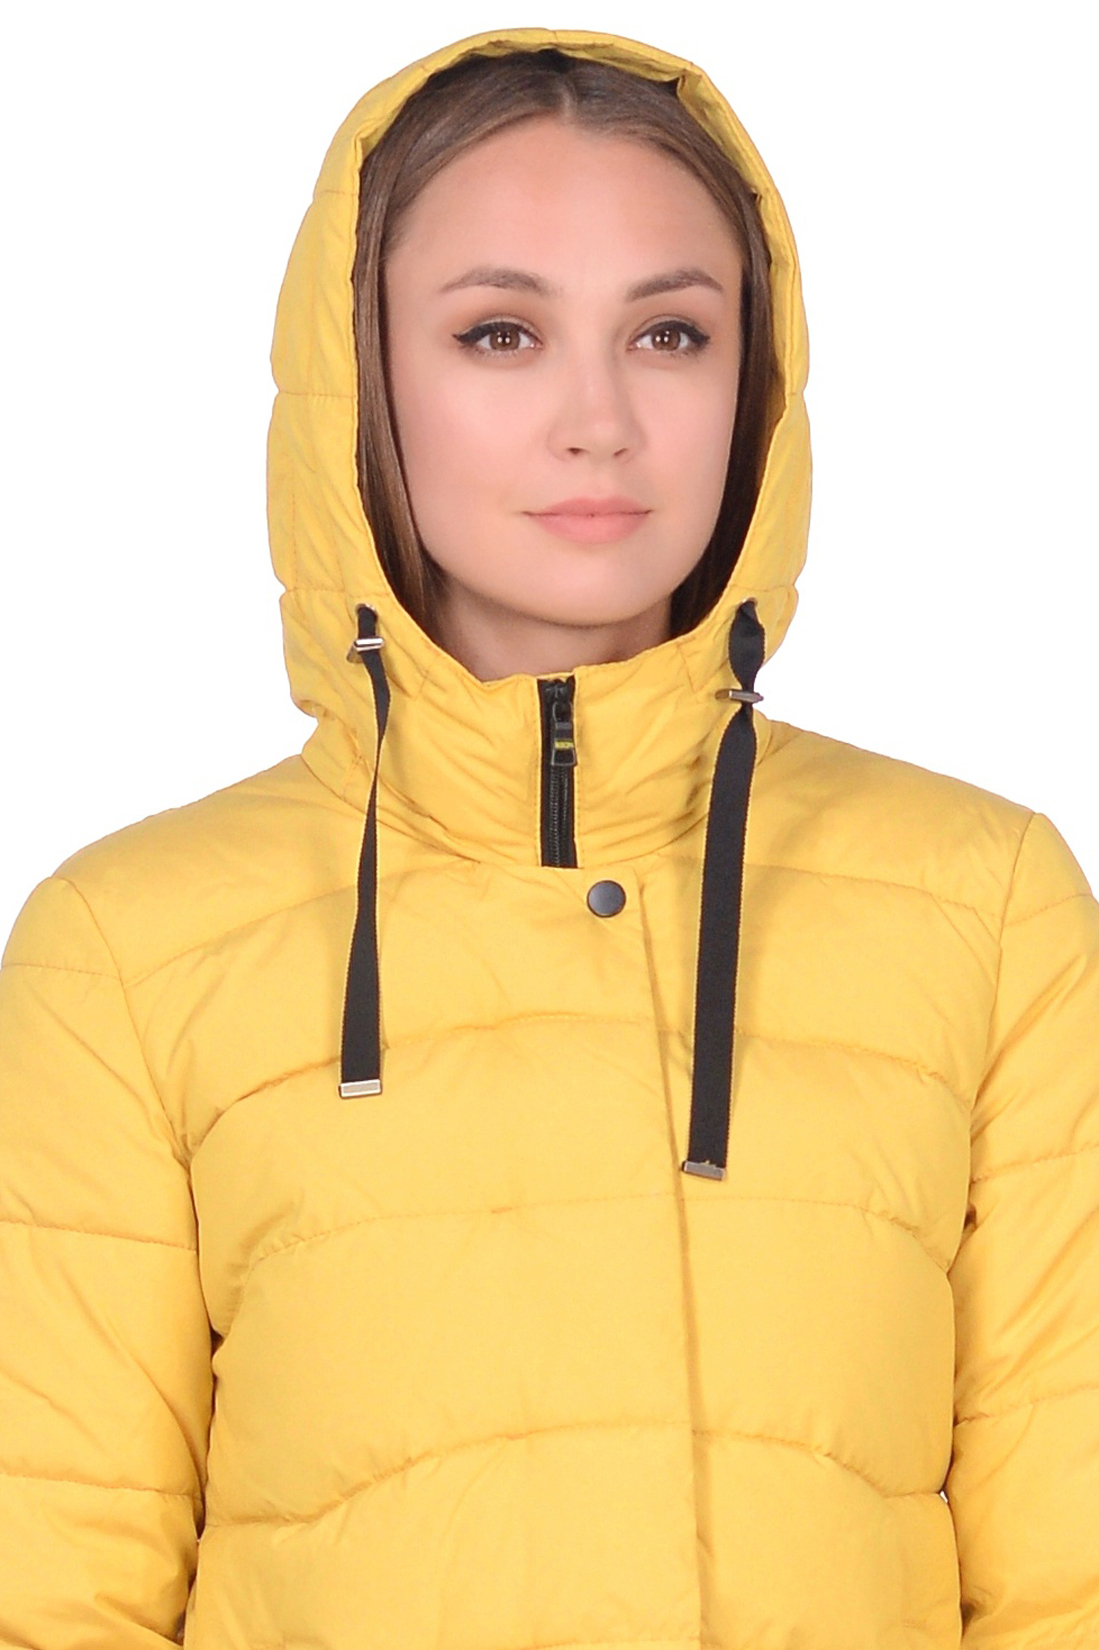 Куртка с фигурной прострочкой (арт. baon B038588), размер M, цвет желтый Куртка с фигурной прострочкой (арт. baon B038588) - фото 2